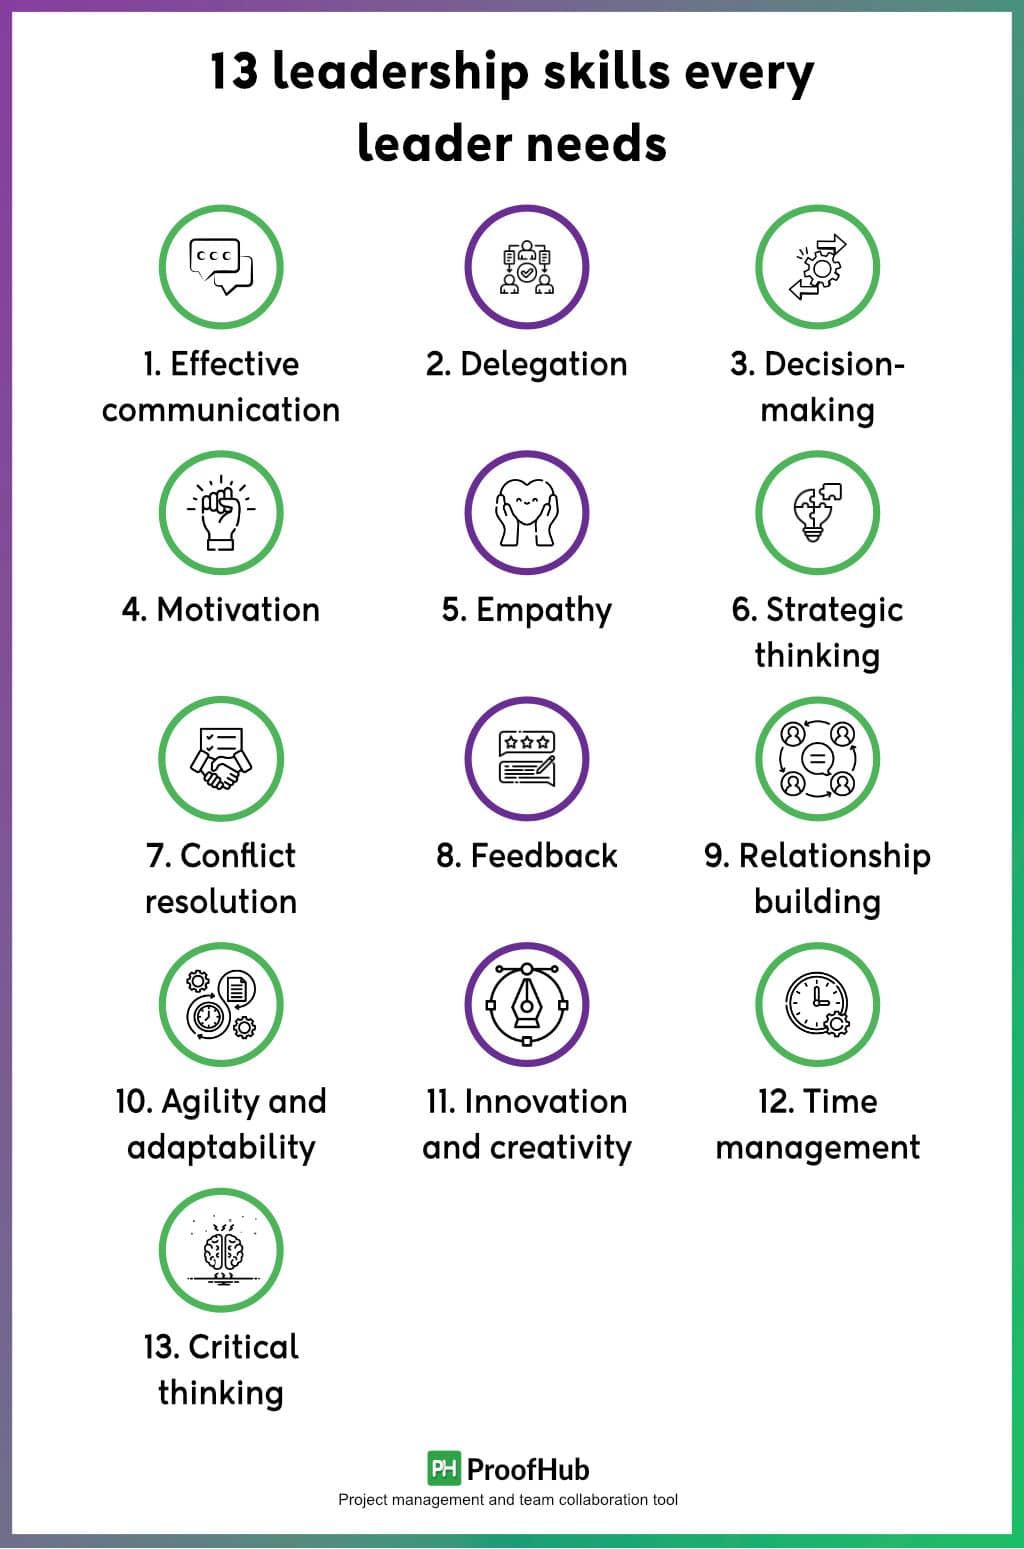 13 leadership skills every leader needs